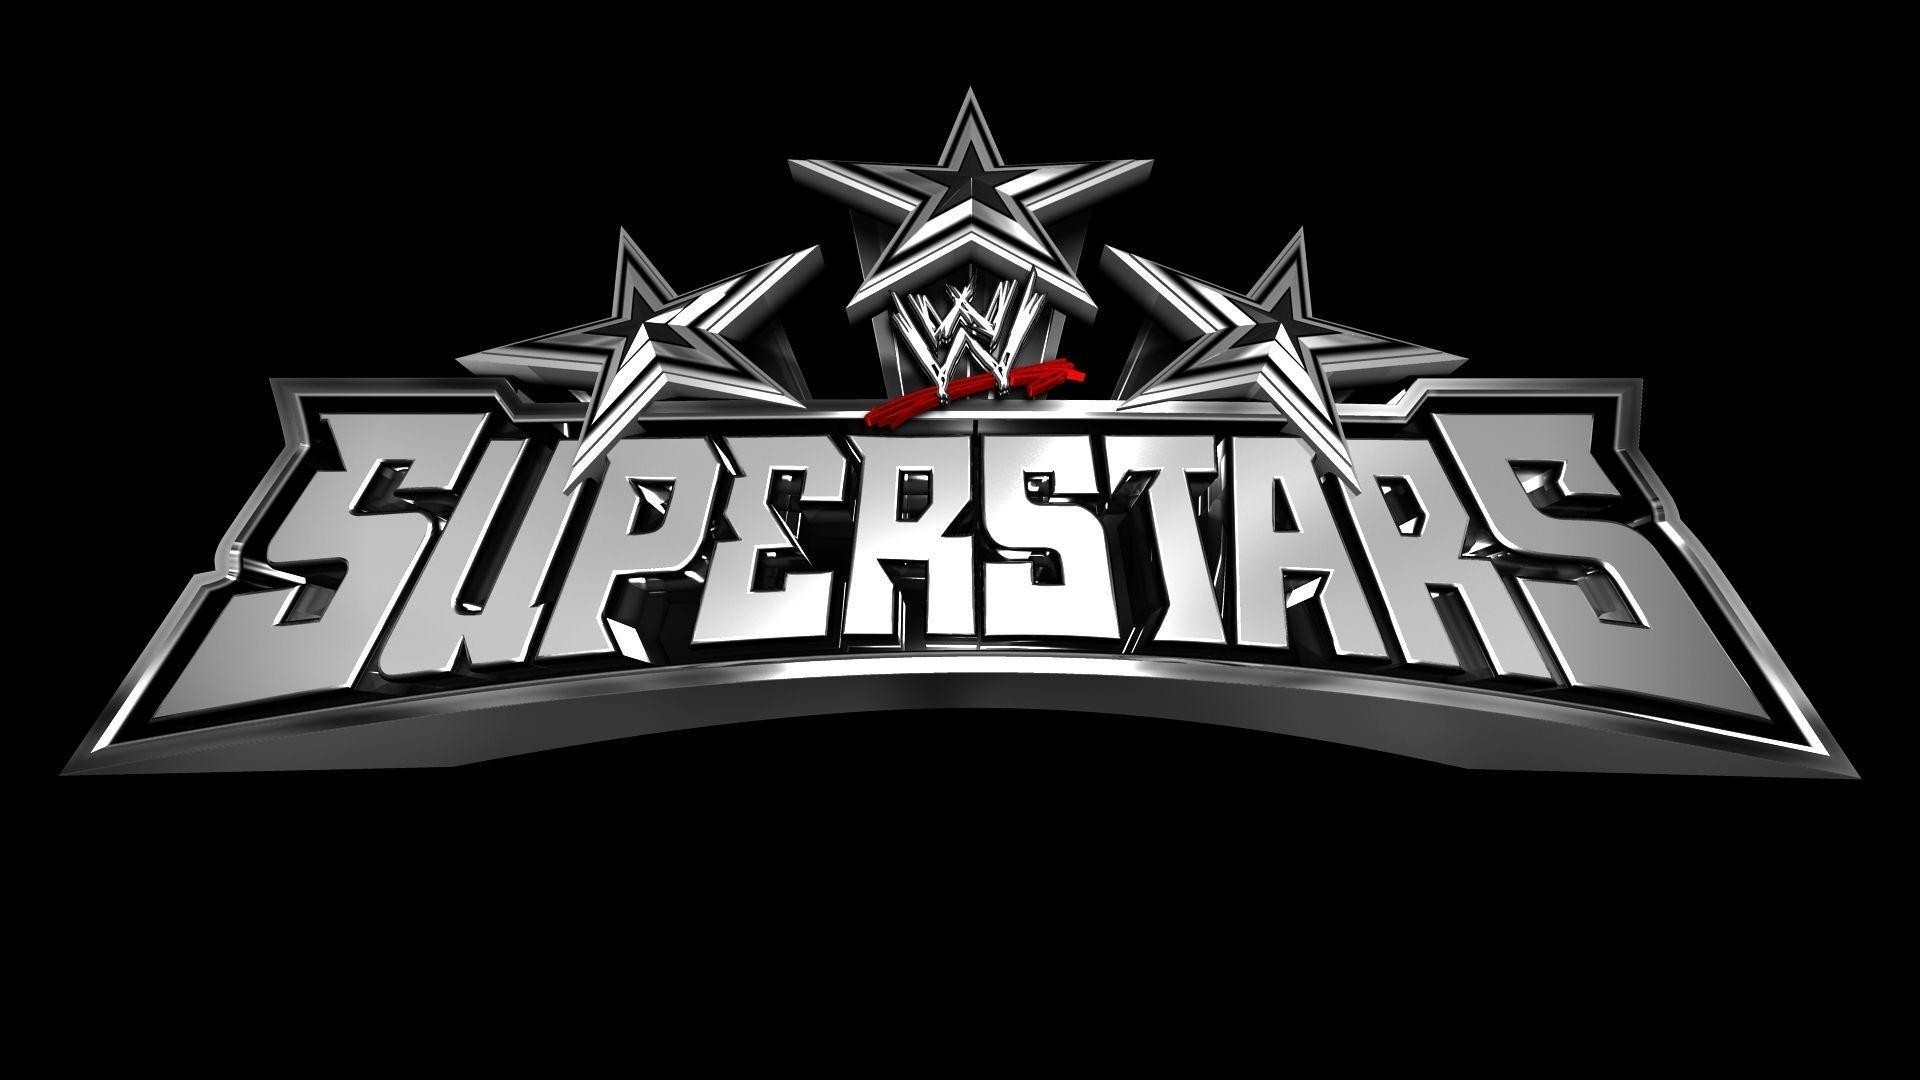 1920x1080 Logo WWE Superstars wallpaper HD 2016 in WWE | Wallpapers HD